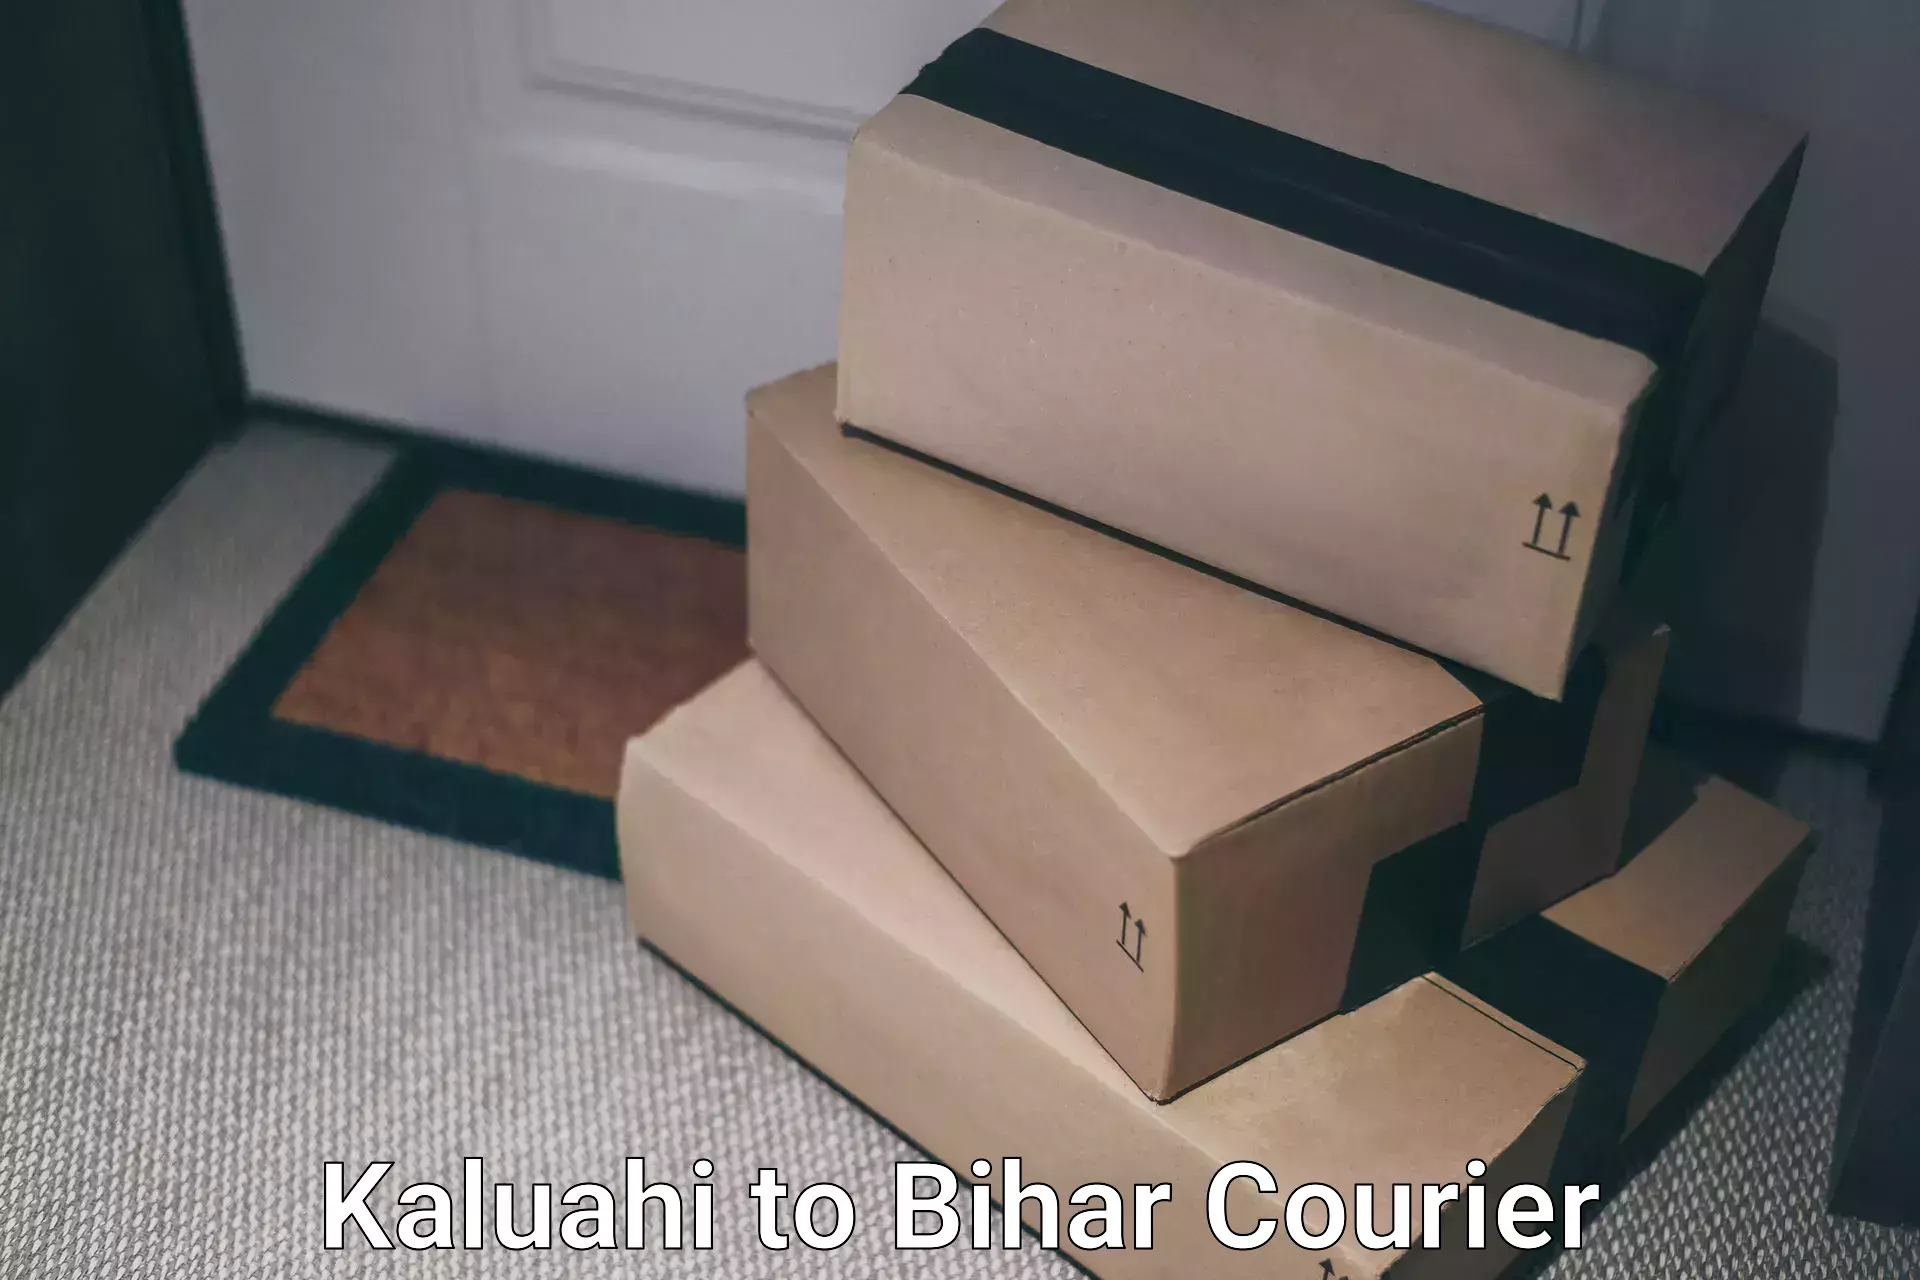 Express logistics Kaluahi to Bihar